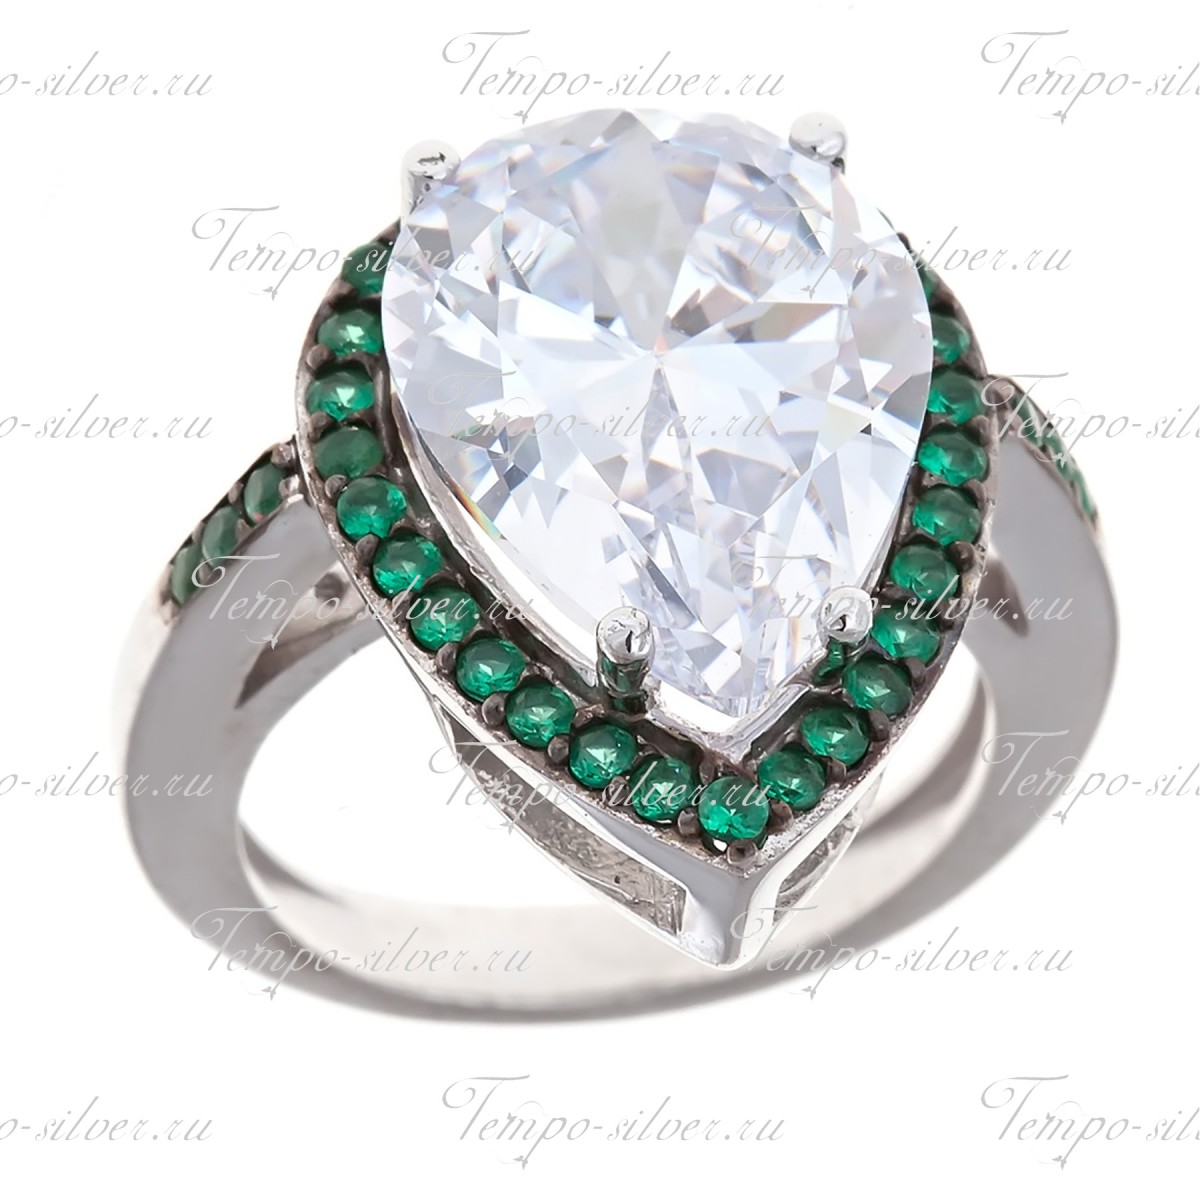 Кольцо серебряное в форме капли с большим камнем и ободком из зеленых камней